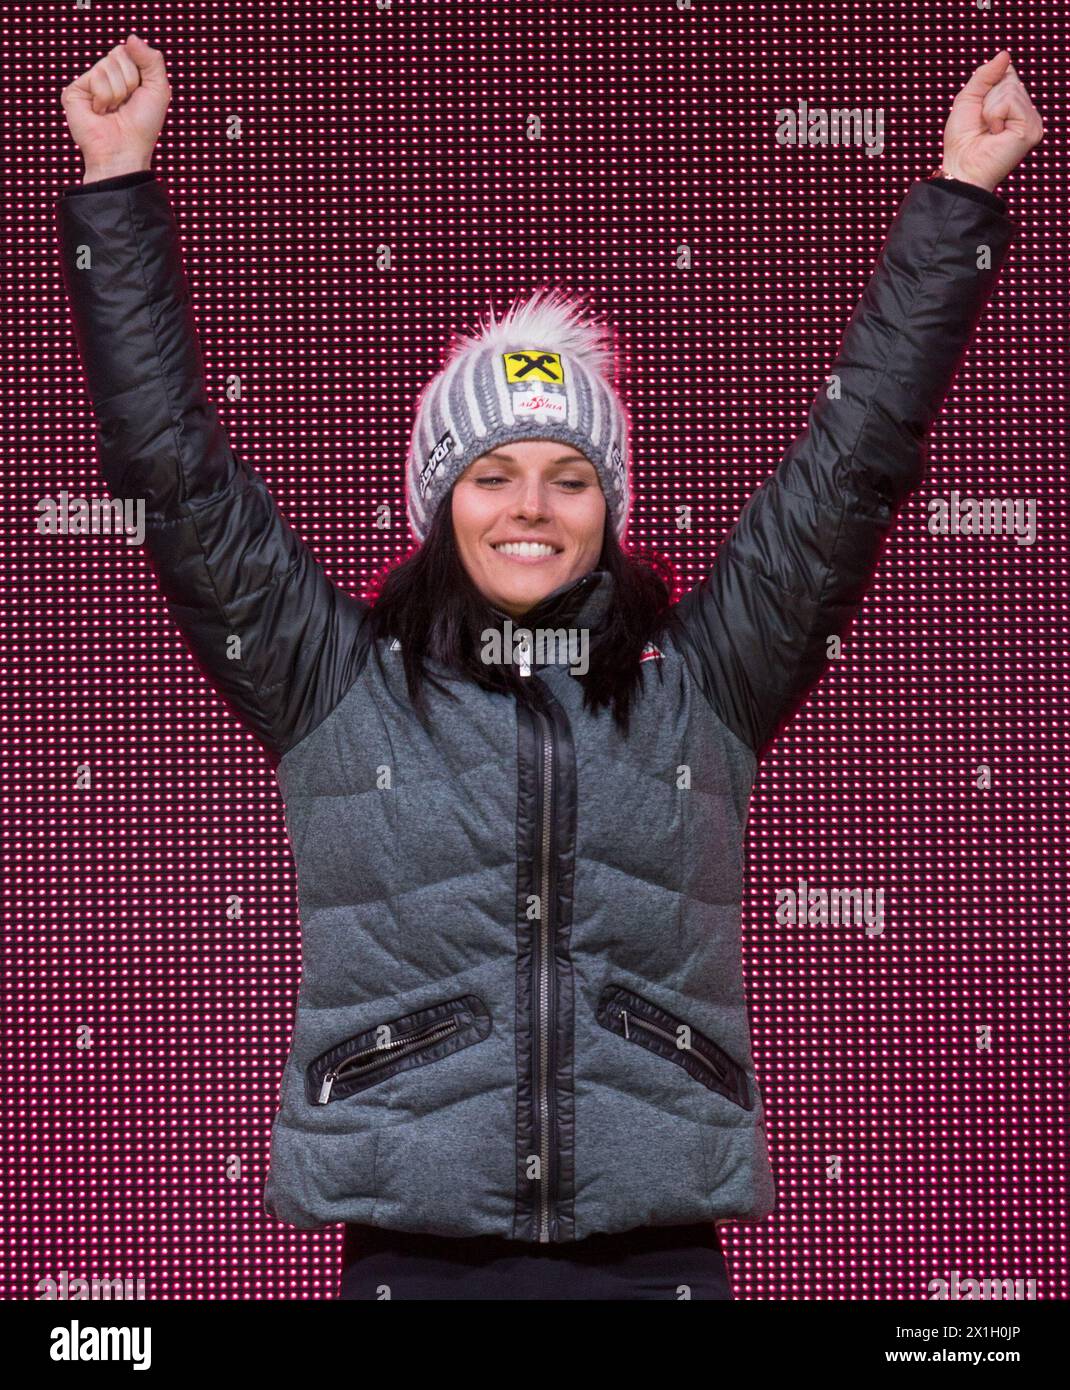 Anna Fenninger aus Österreich feiert ihre Goldmedaille während der Medaillenzeremonie für das Riesenslalom der Frauen bei der FIS-Ski-Weltmeisterschaft im alpinen Skisport in Beaver Creek, Colorado, USA, am 12. Februar 2015. - 20150213 PD0309 - Rechteinfo: Rechte verwaltet (RM) Stockfoto